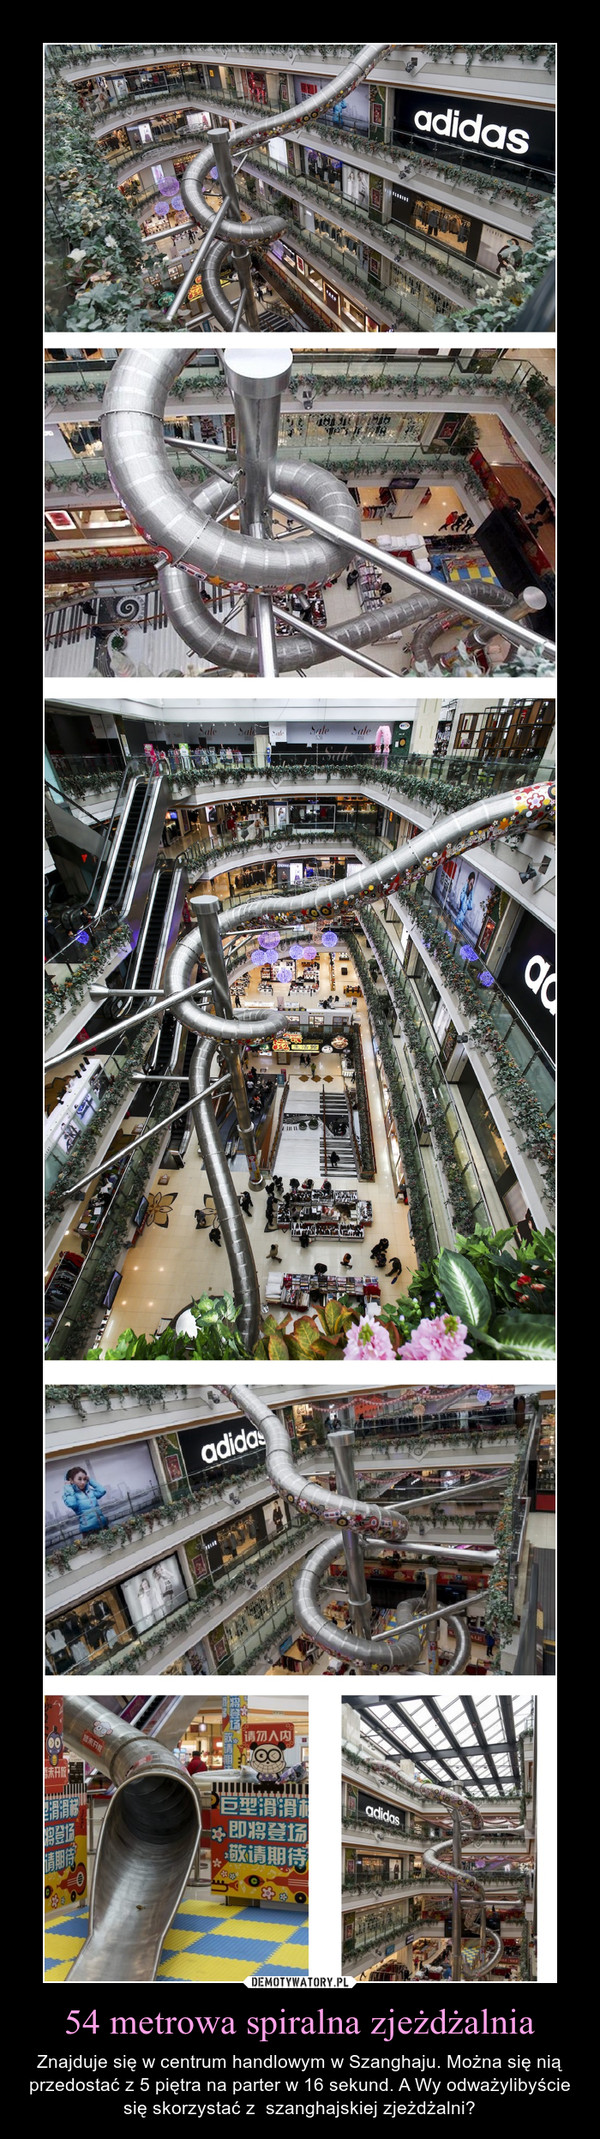 54 metrowa spiralna zjeżdżalnia – Znajduje się w centrum handlowym w Szanghaju. Można się nią przedostać z 5 piętra na parter w 16 sekund. A Wy odważylibyście się skorzystać z  szanghajskiej zjeżdżalni? 